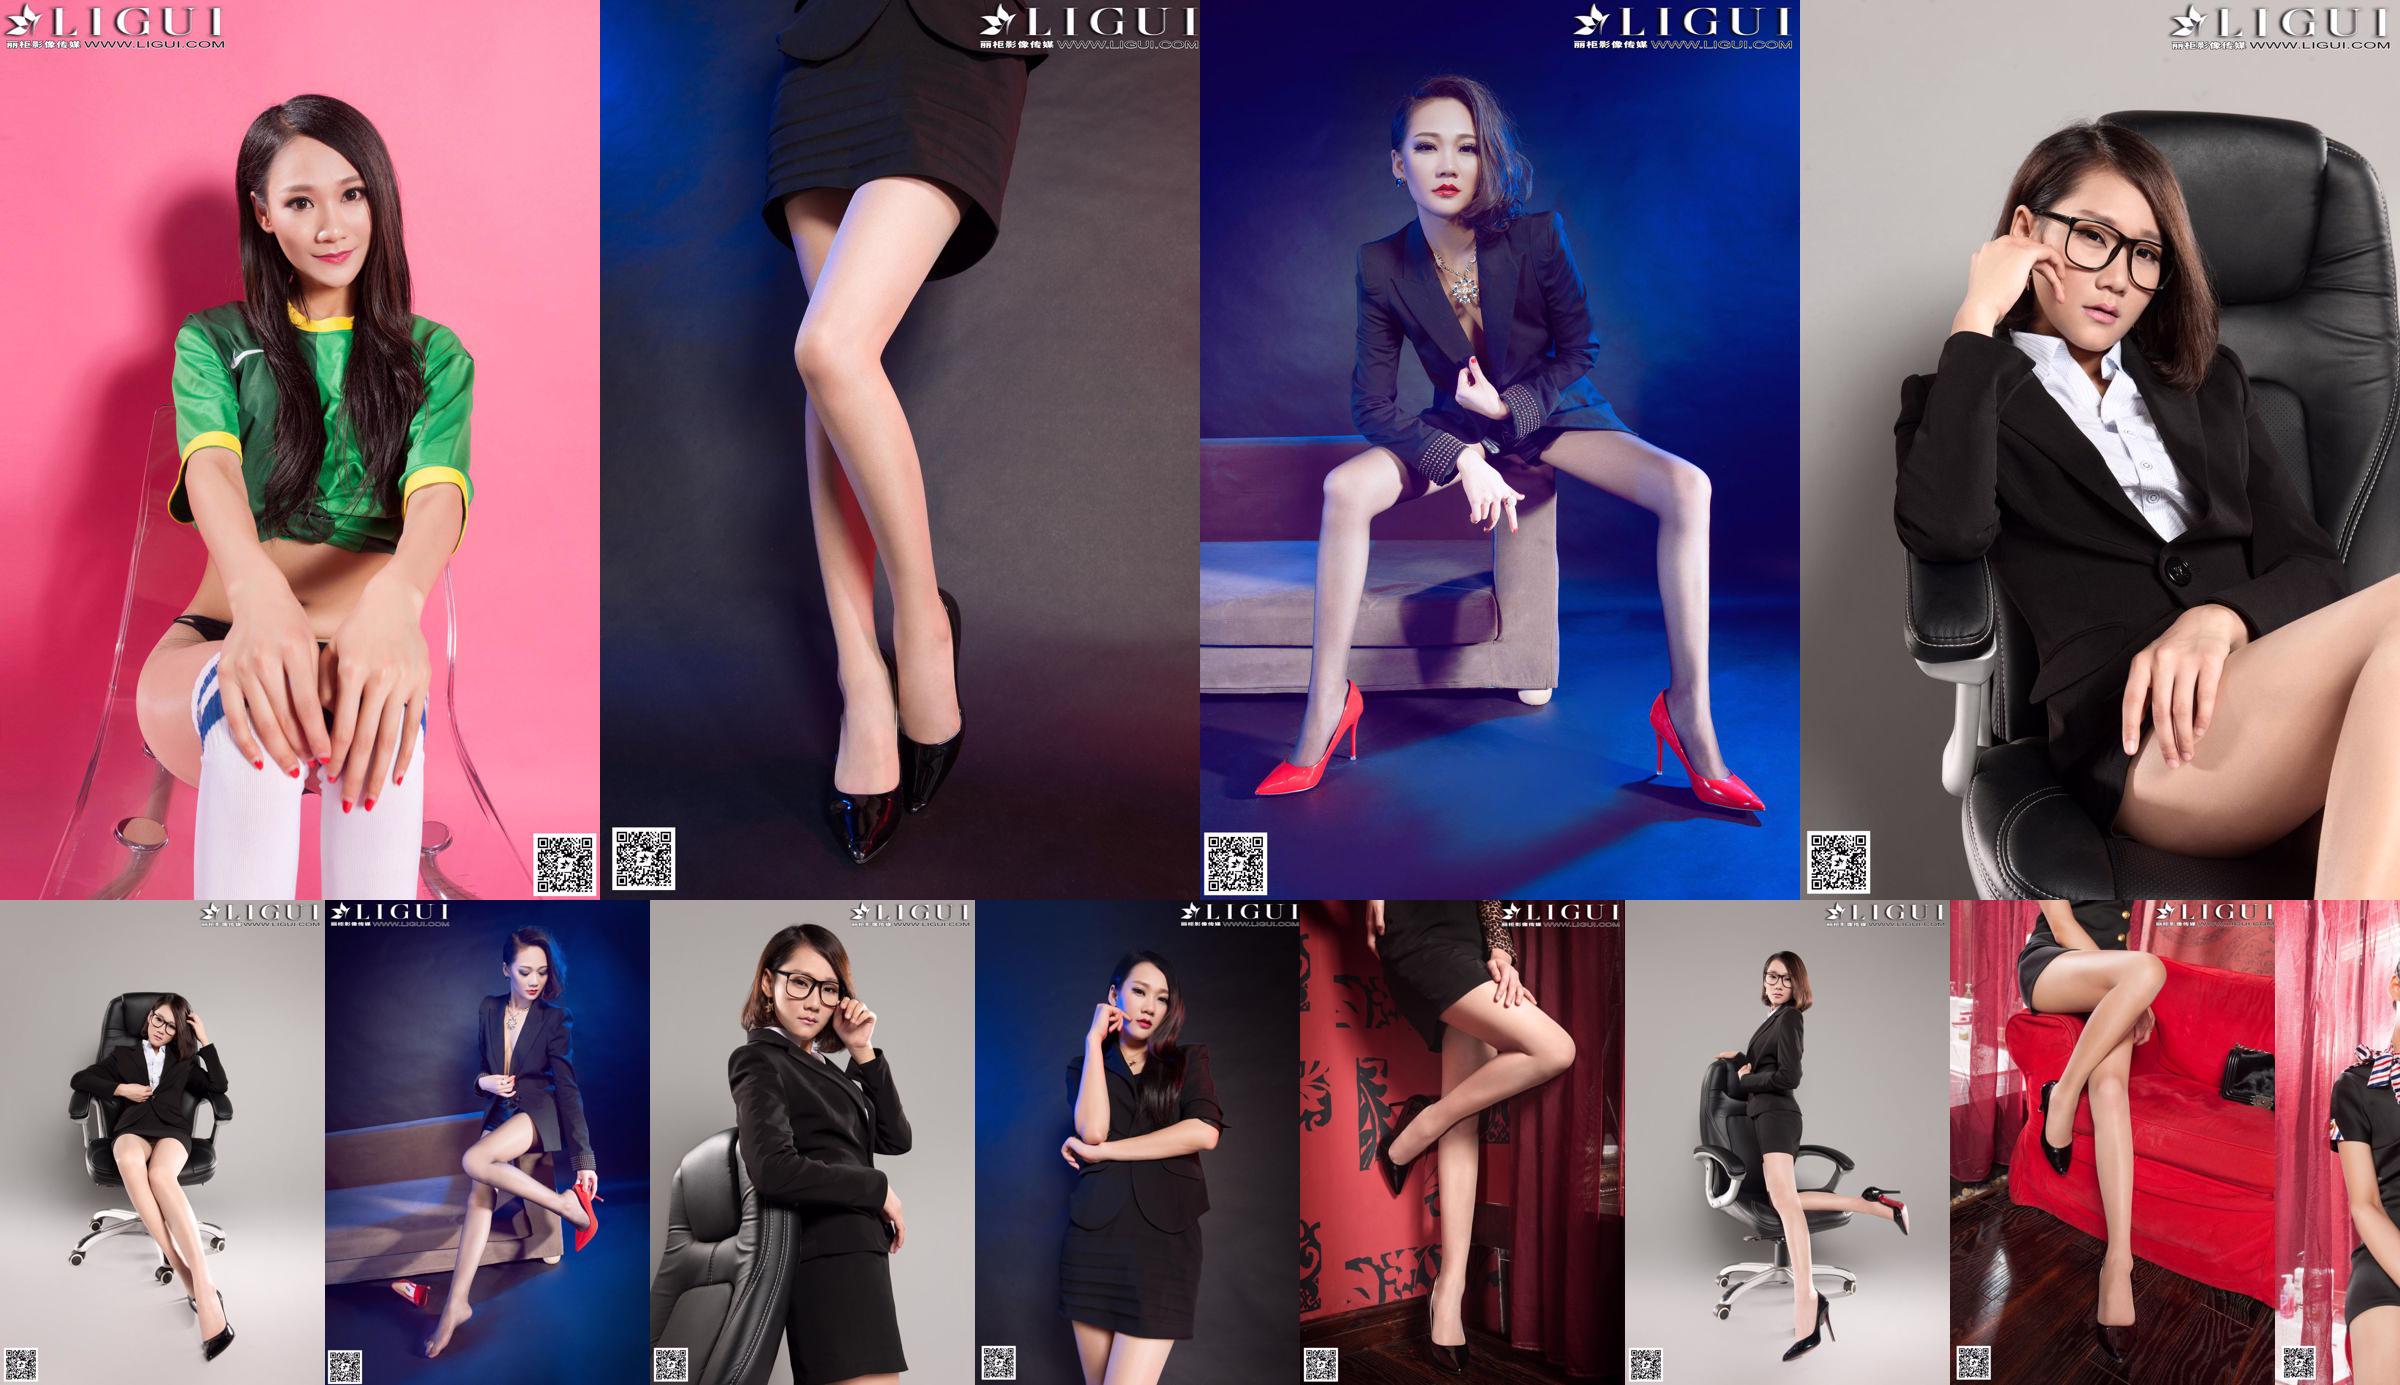 [丽 柜 LiGui] Model Mandys "Professional Wear High-Heels Silk Feet" - Sammlung wunderschöner Beine und Jadefußfotos No.8f7da1 Seite 7